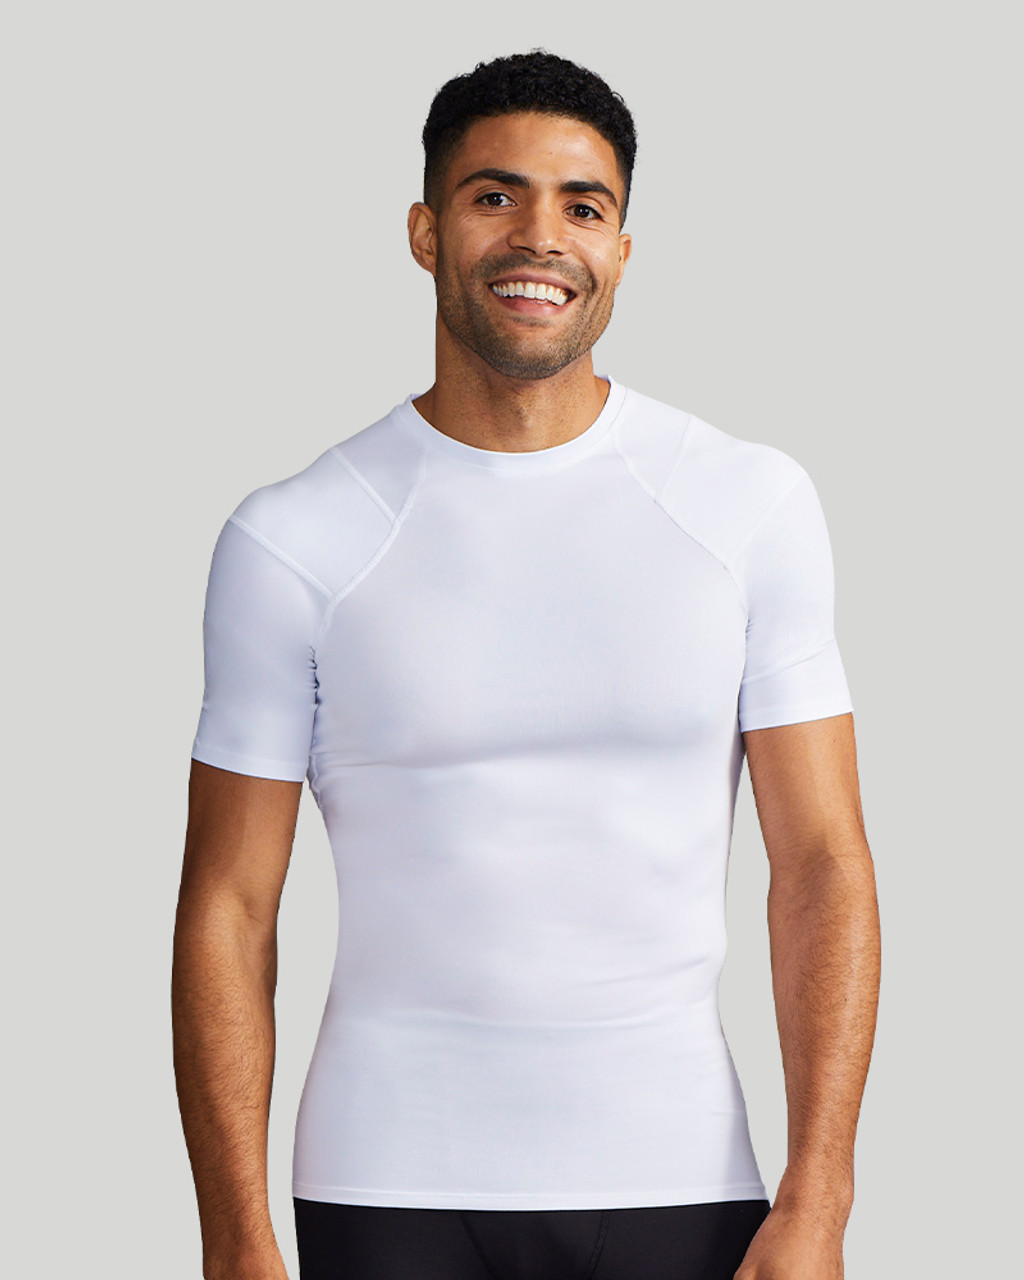 Men's Posture Shirt | Shop Tommie Copper® Compression Now